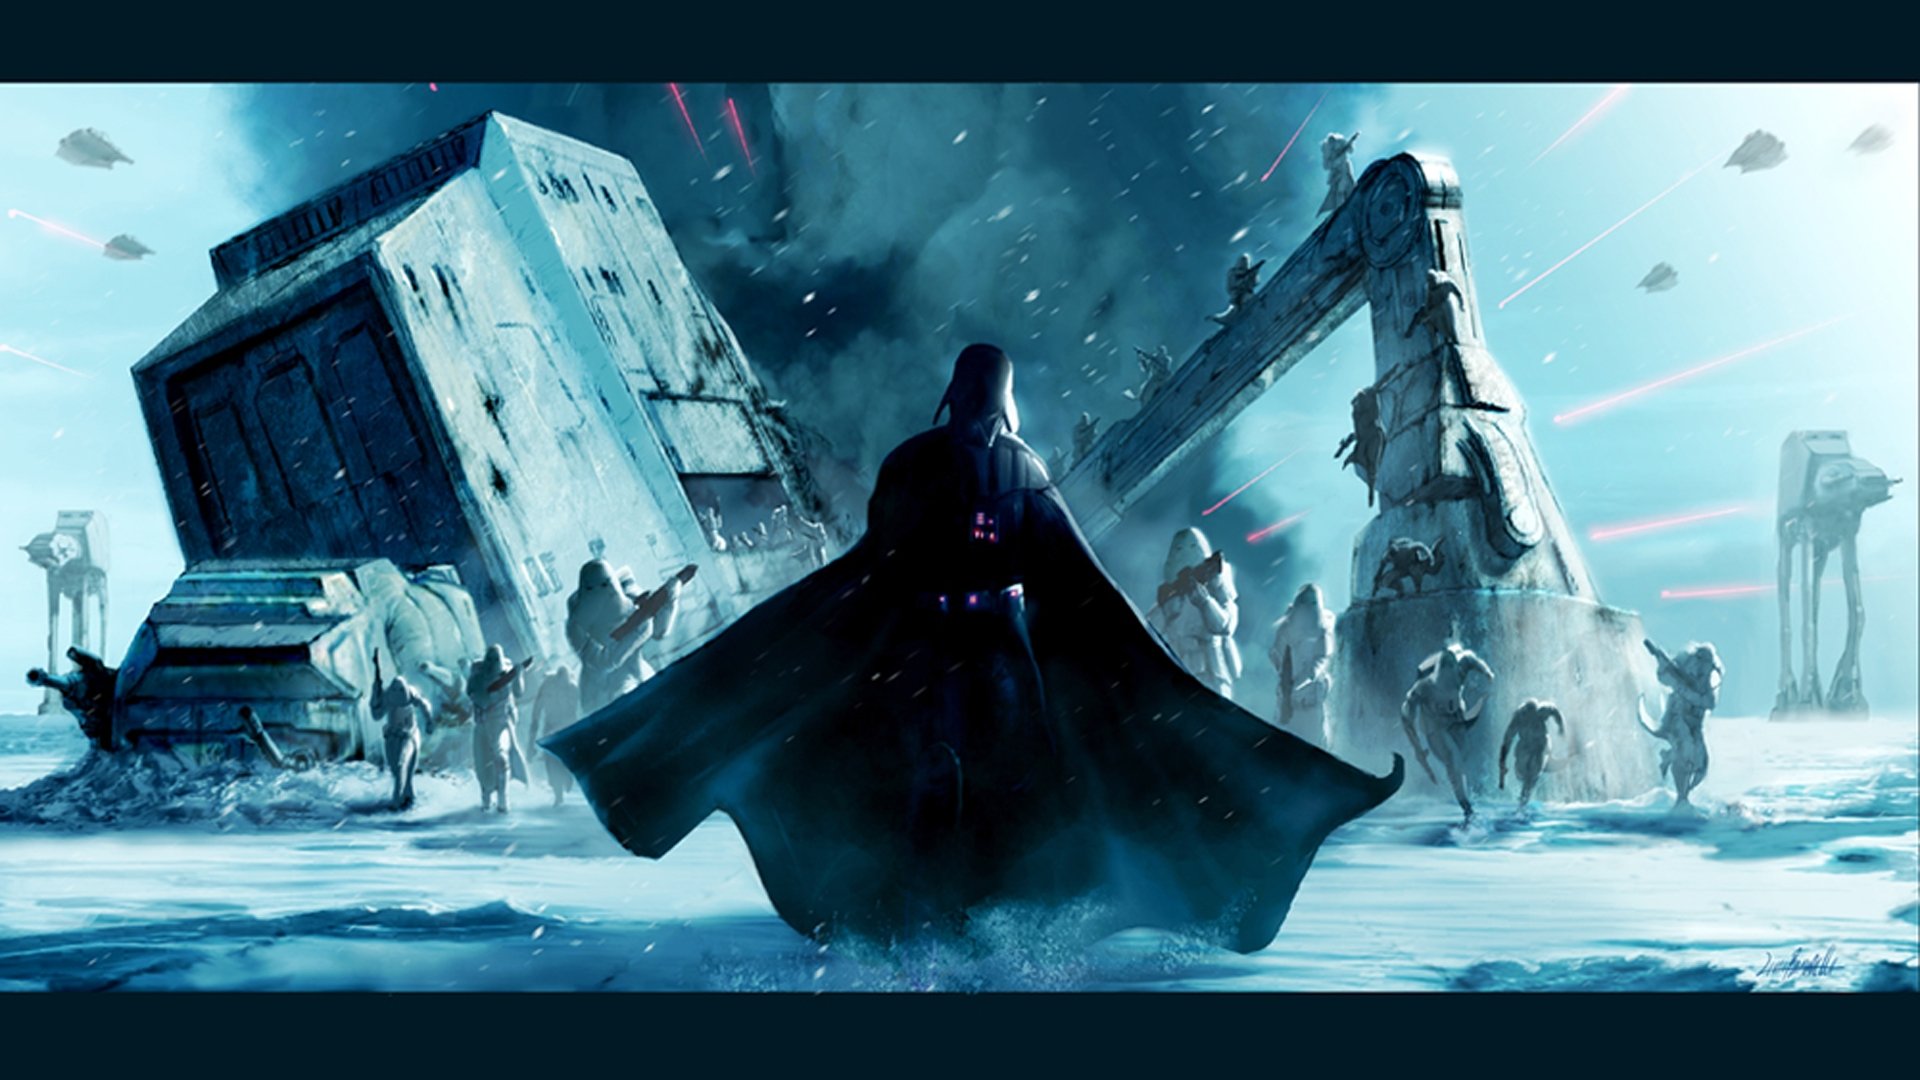 Star Wars   Darth Vader Hoth HD Wallpaper FullHDWpp   Full HD 1920x1080